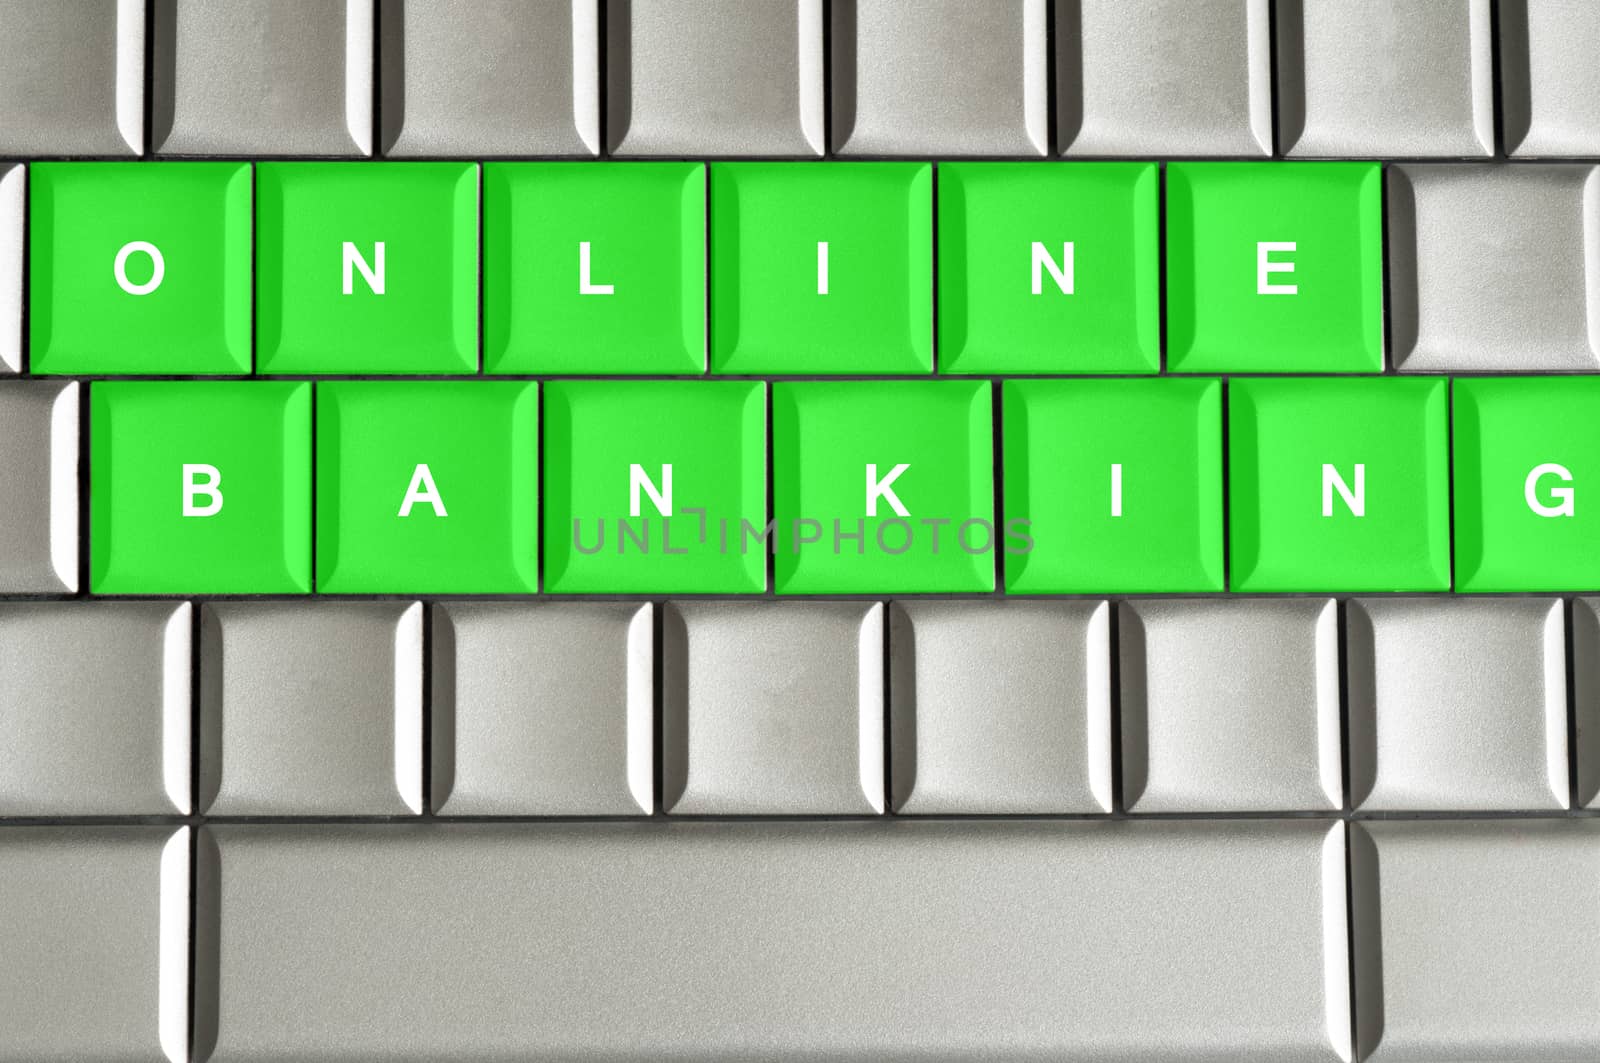 Online Banking spelled on a metallic keyboard by daoleduc